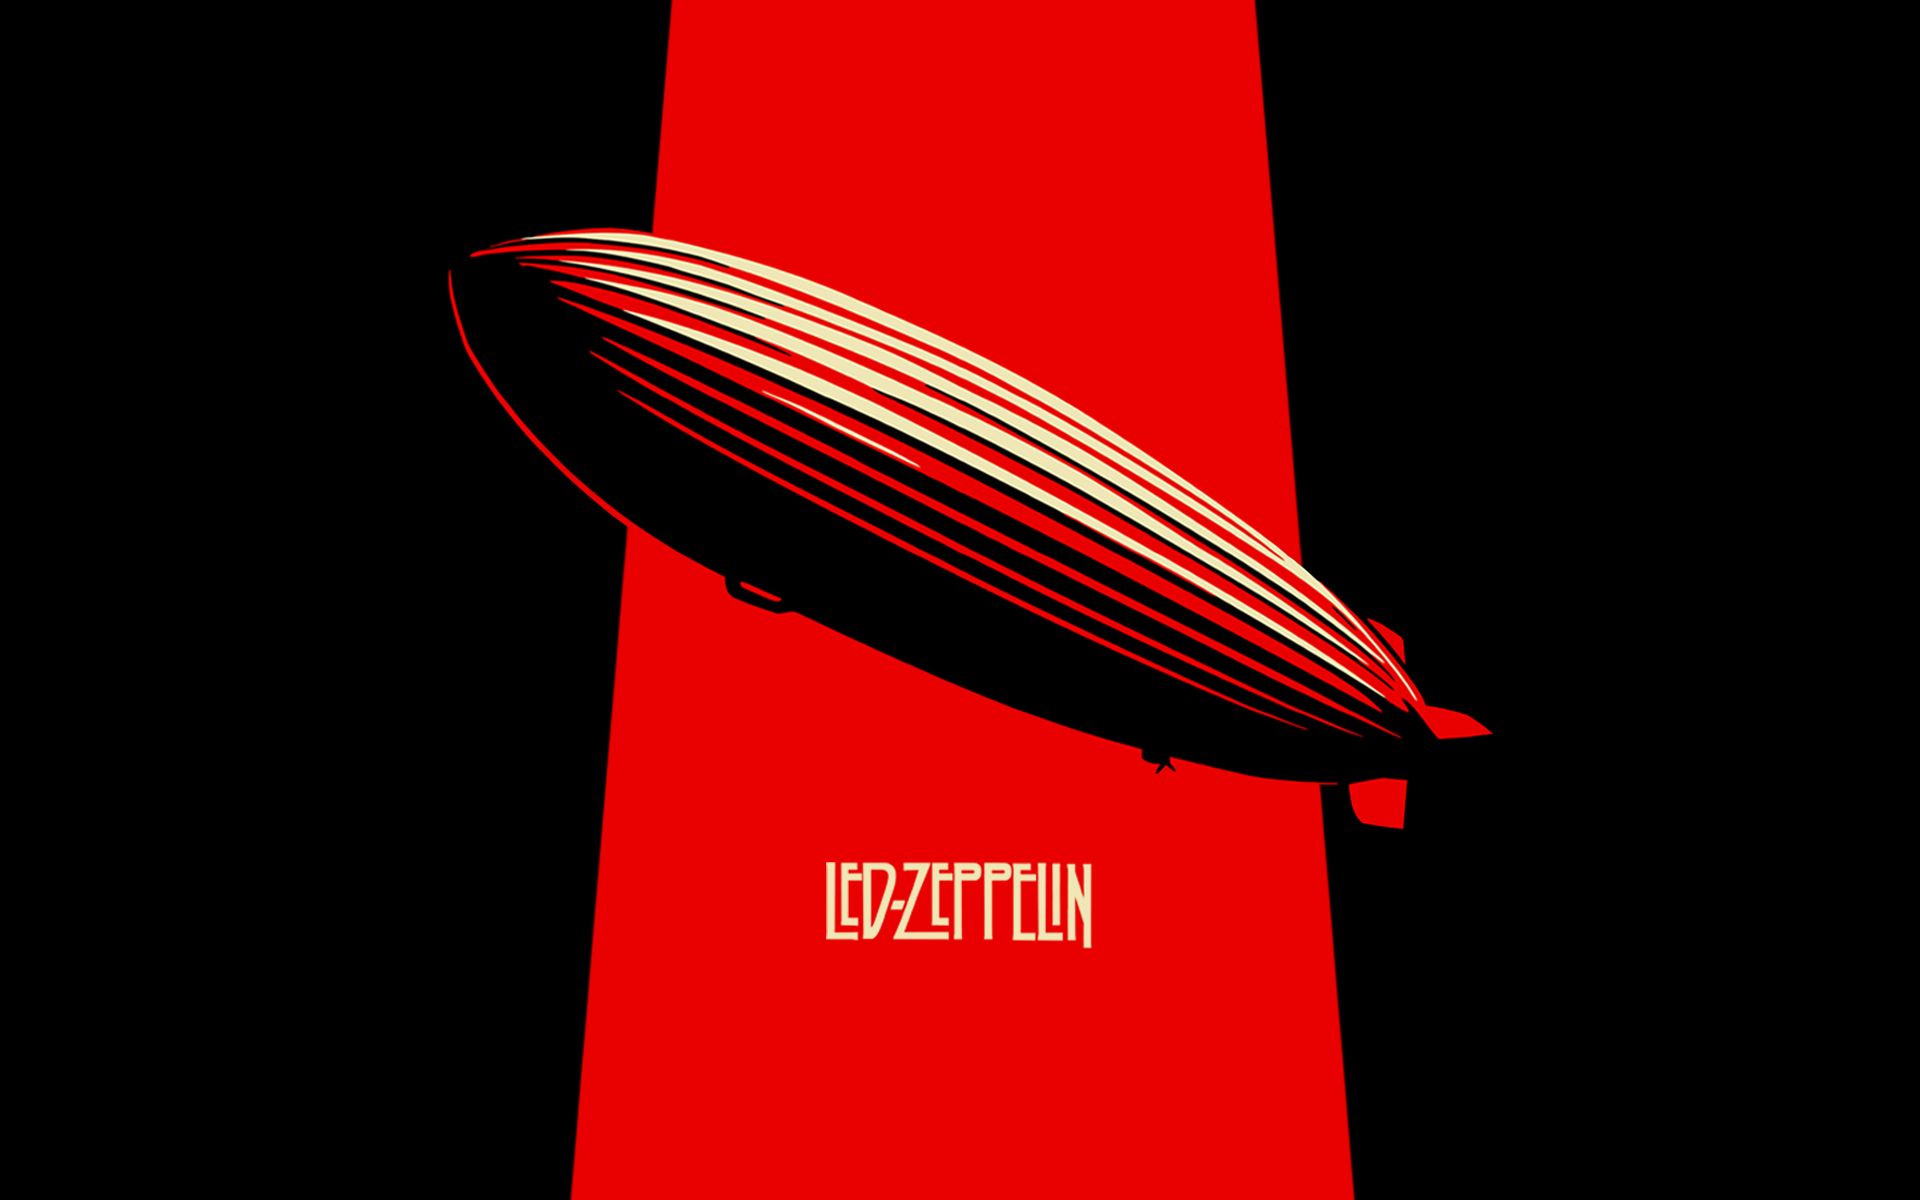 led zeppelin, music